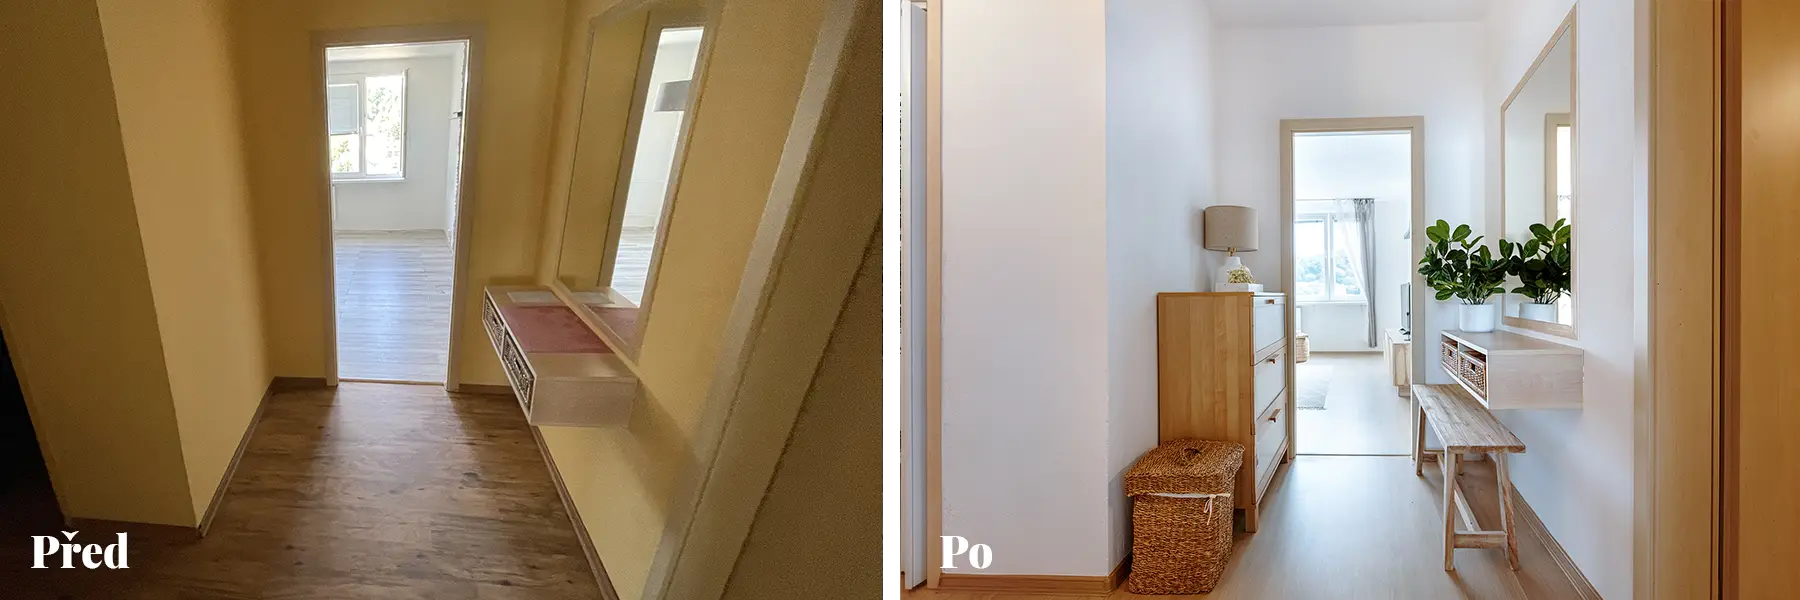 Před a po 3P home stagingu předsíně